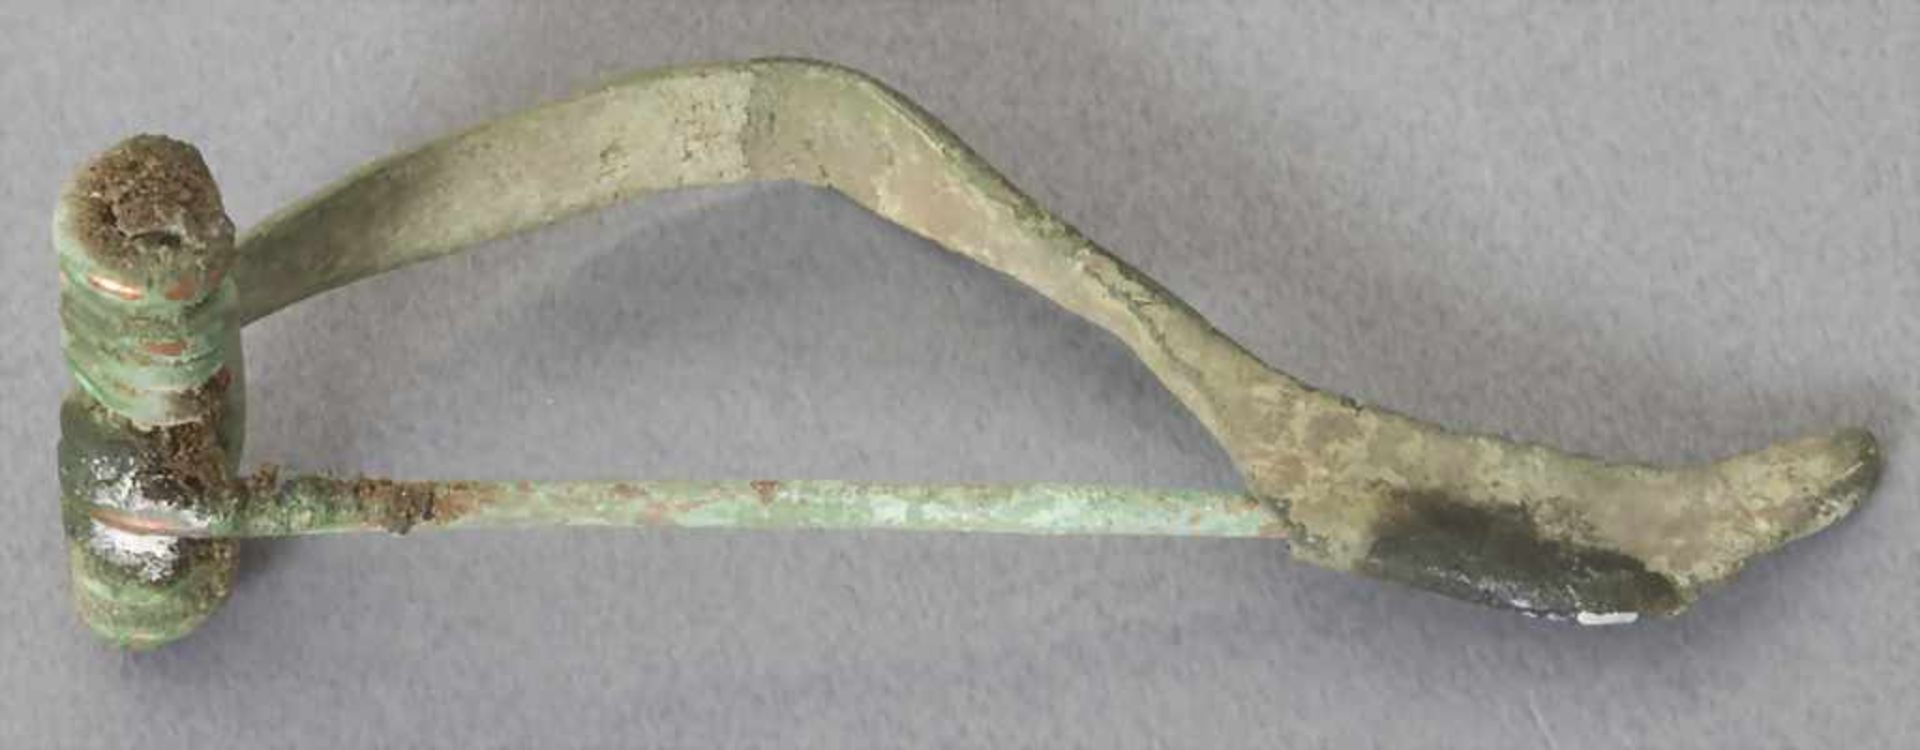 Keltische Fibel / A celtic fibulaMaterial: Bronze,Länge: 4,9 cm,Zustand: gut, alt restauriert, - Image 2 of 2